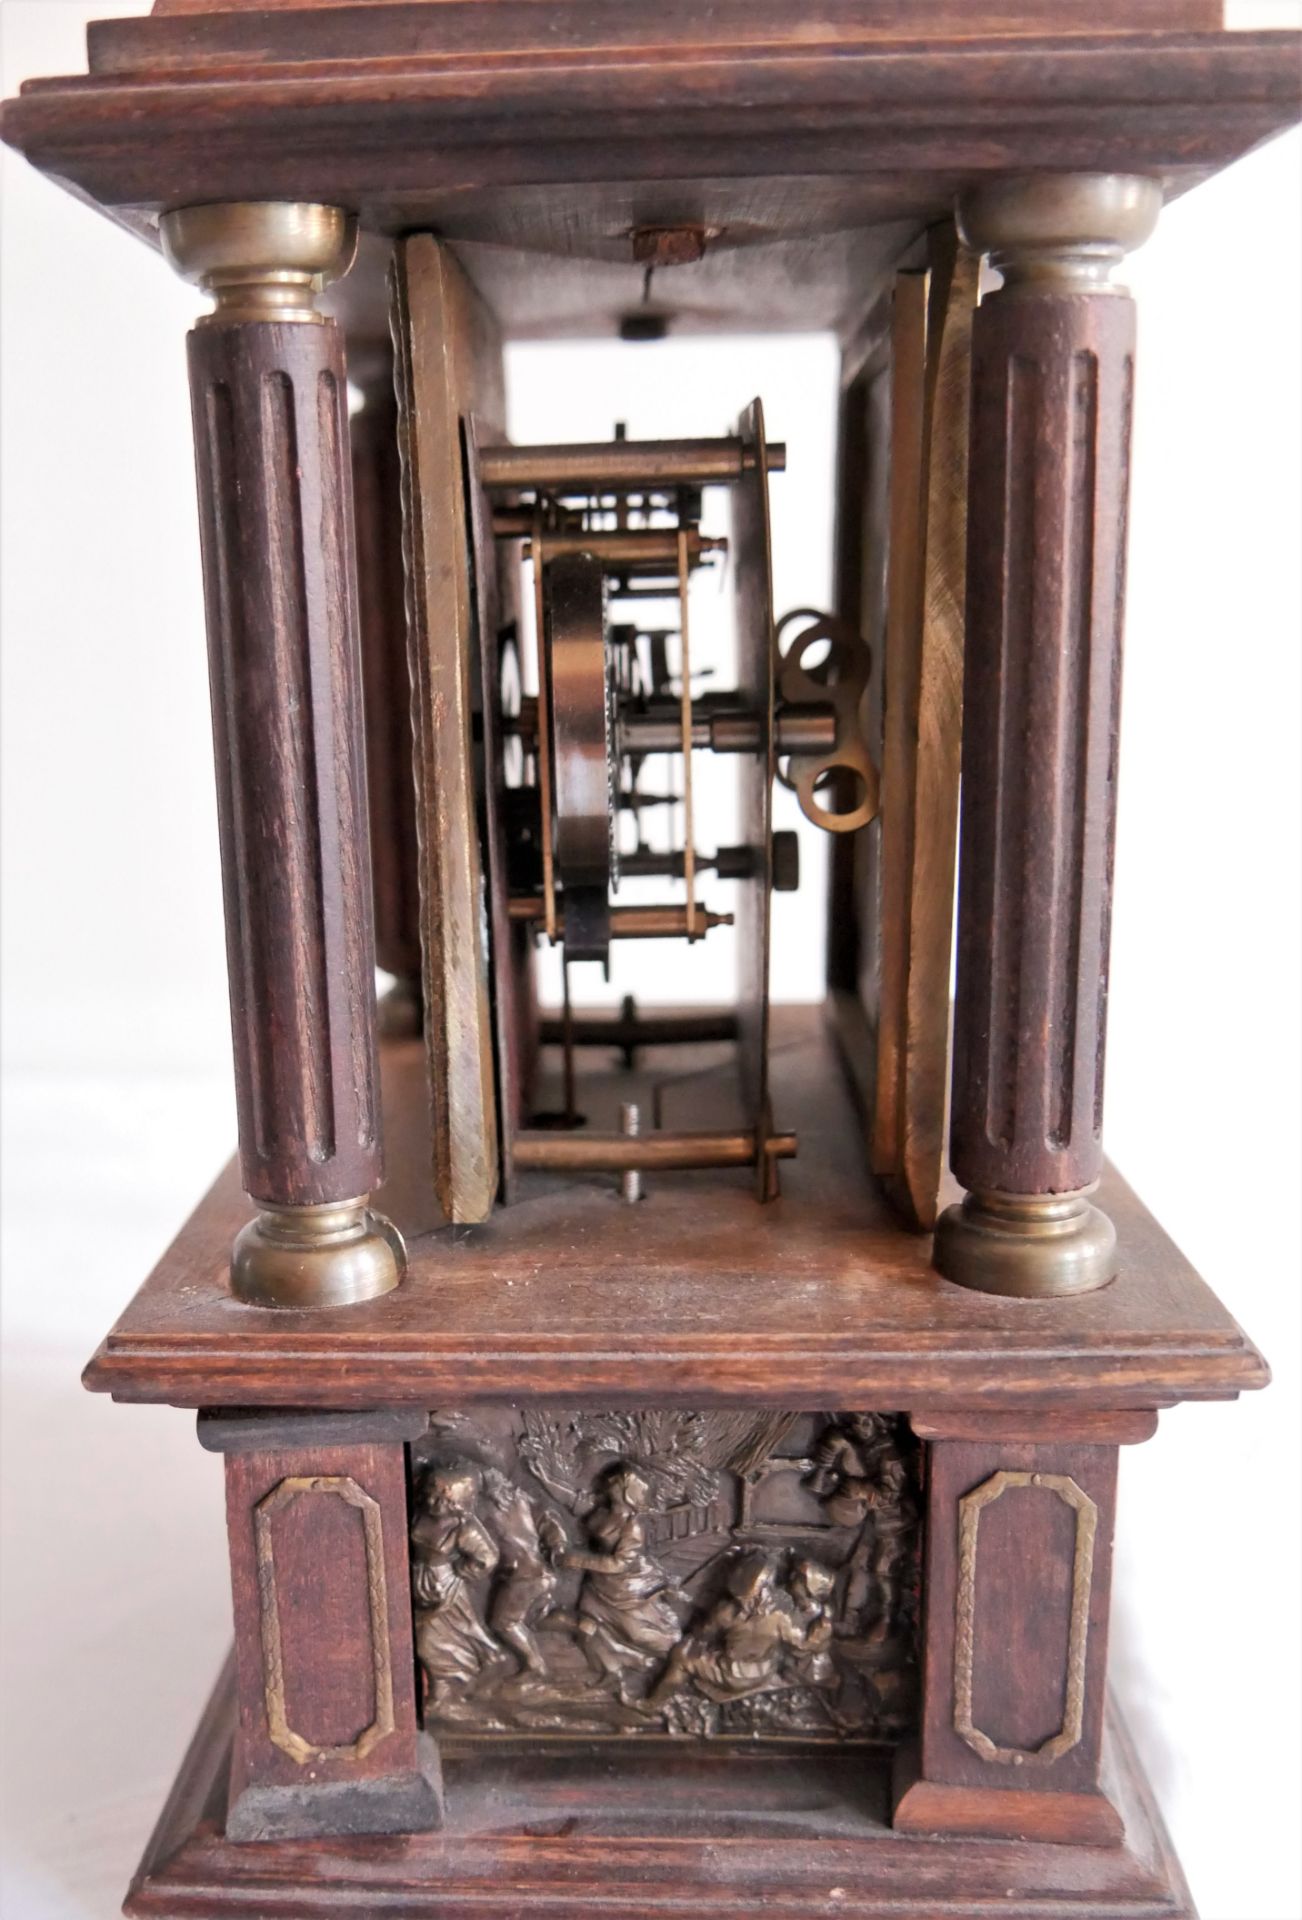 Tischuhr mit Spieluhr LFS = Lorenz Furtwängler & Söhne. 19. Jahrhundert, restaurierungsbedürftig. - Image 3 of 4